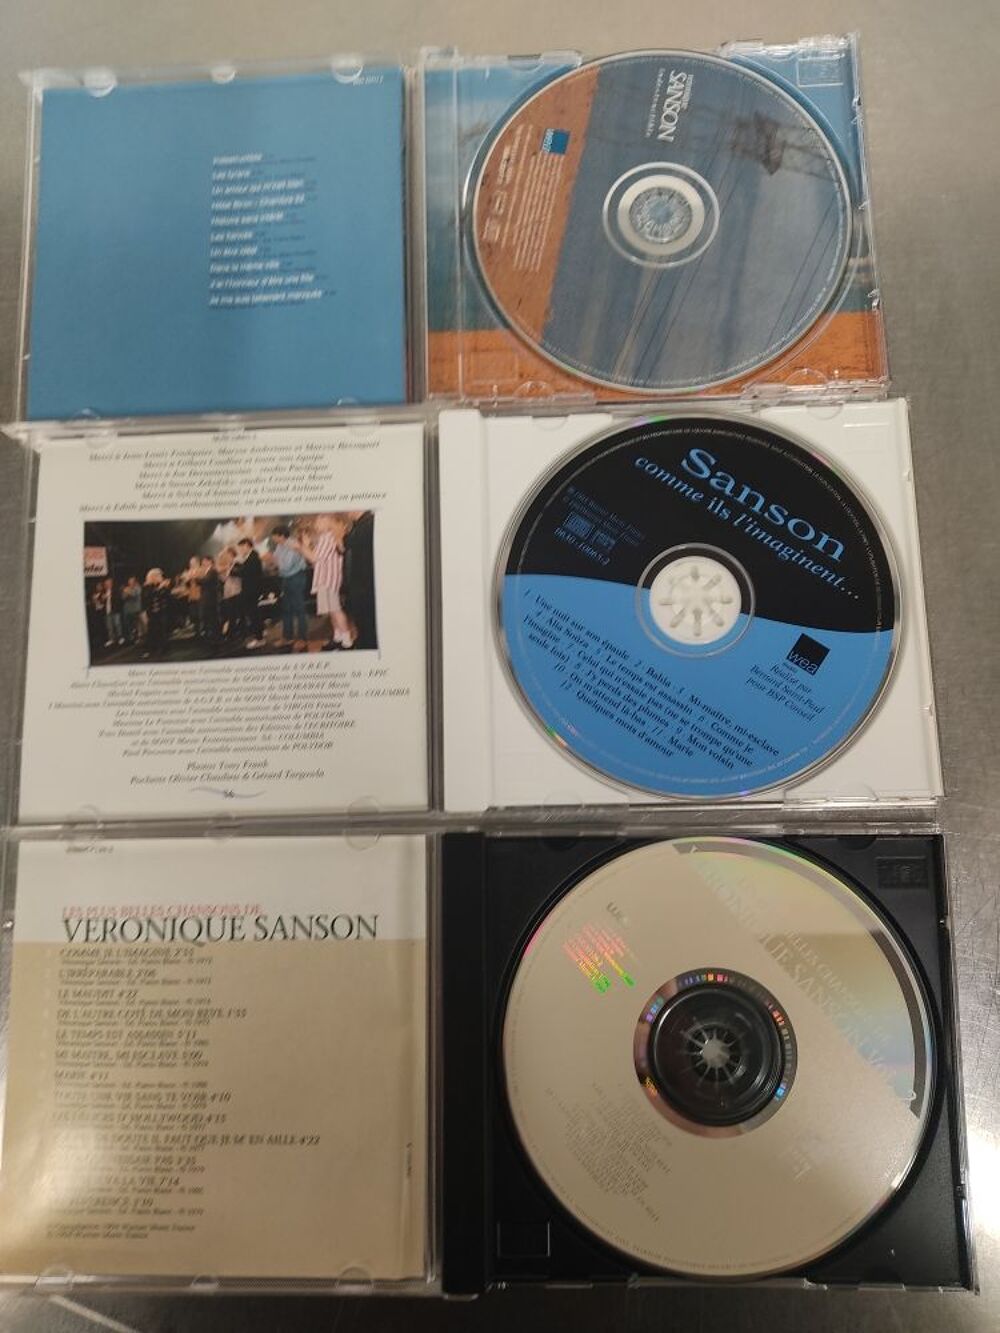 lot de CD de 'veronique sansson' CD et vinyles